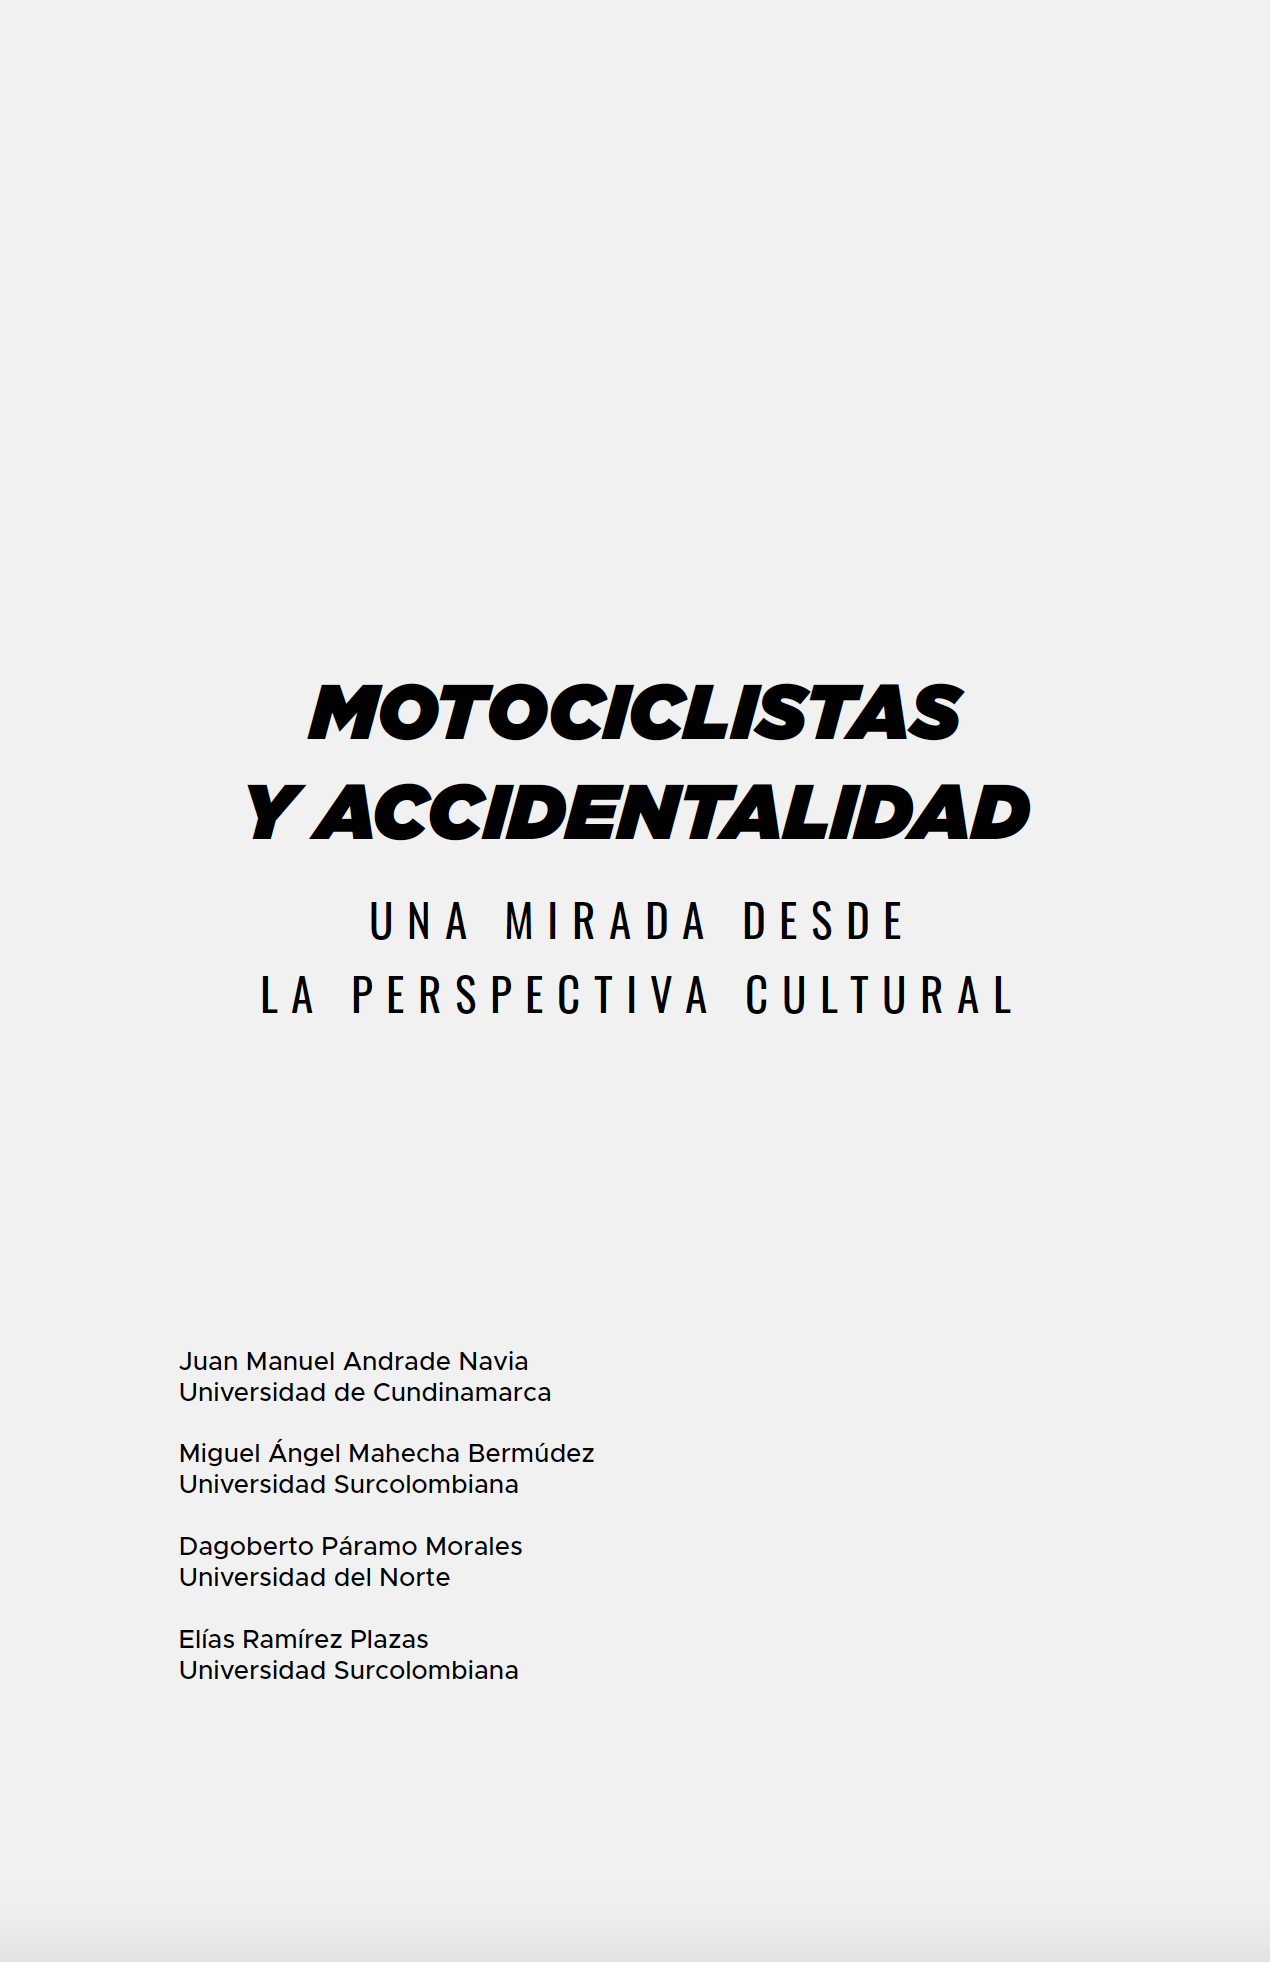 Motociclistas y accidentalidad. Una mirada desde la perspectiva cultural